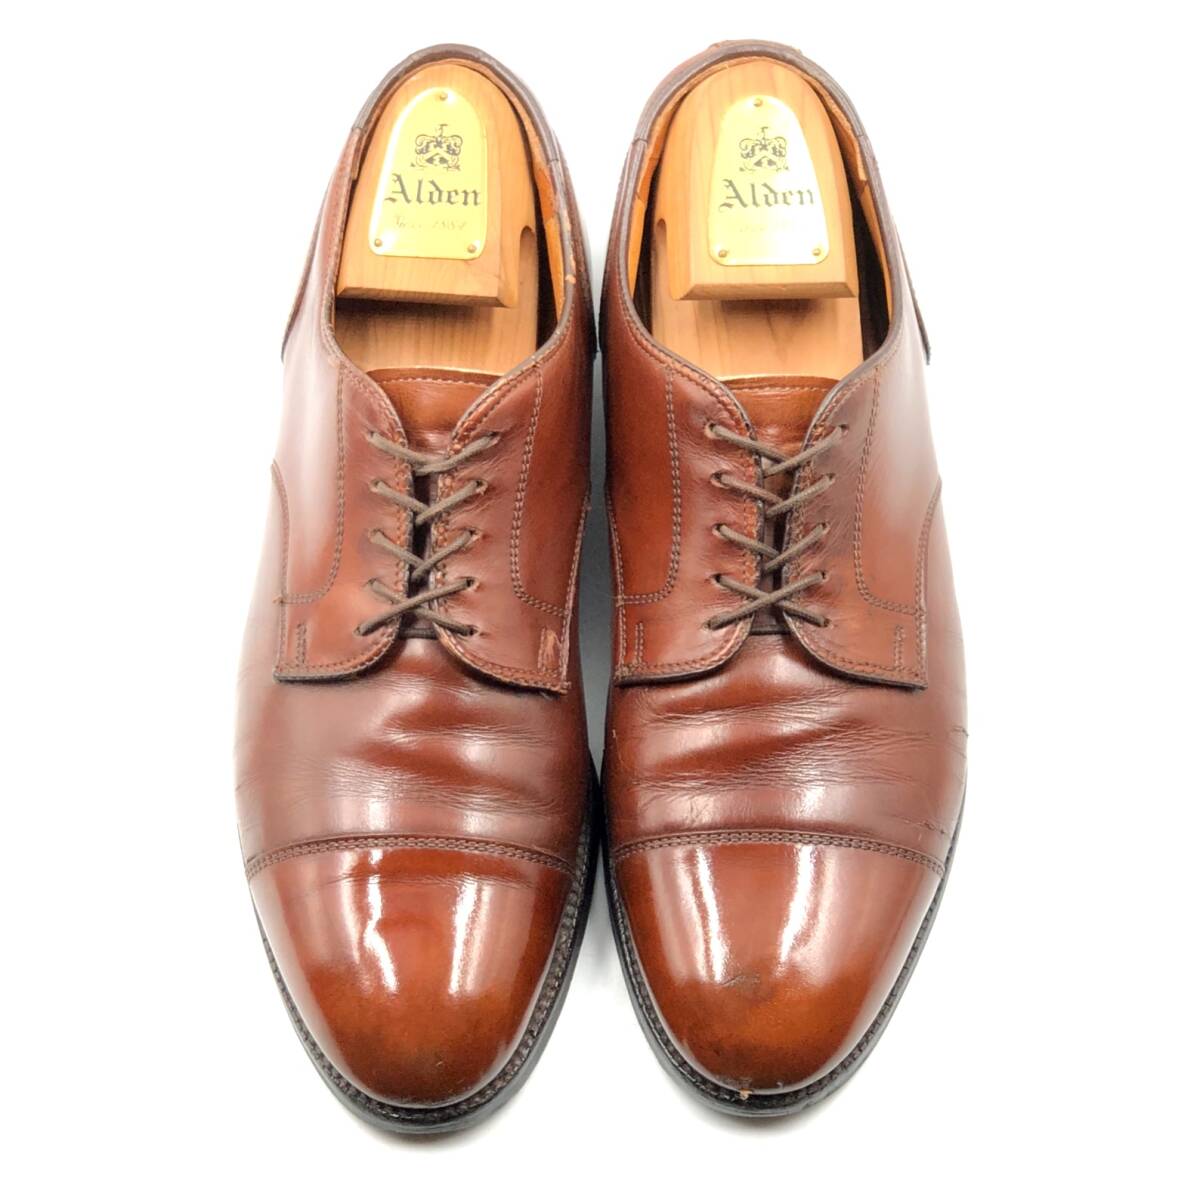 即決 ALDEN オールデン 27cm 9 972 メンズ レザーシューズ ストレートチップ 外羽根 茶 ブラウン 革靴 皮靴 ビジネスシューズ